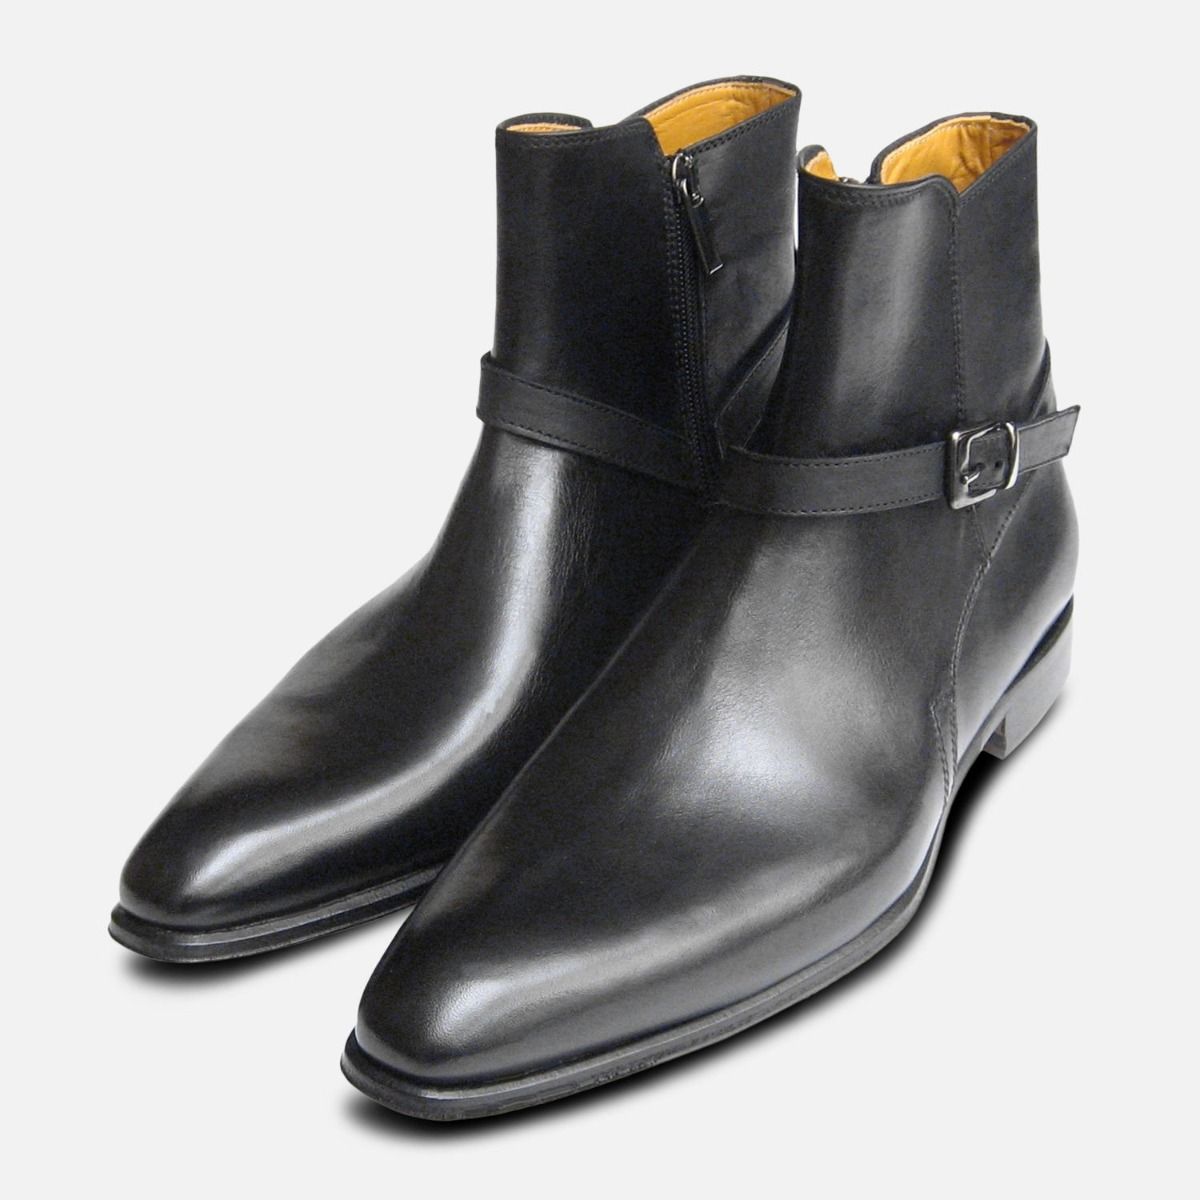 designer black boots